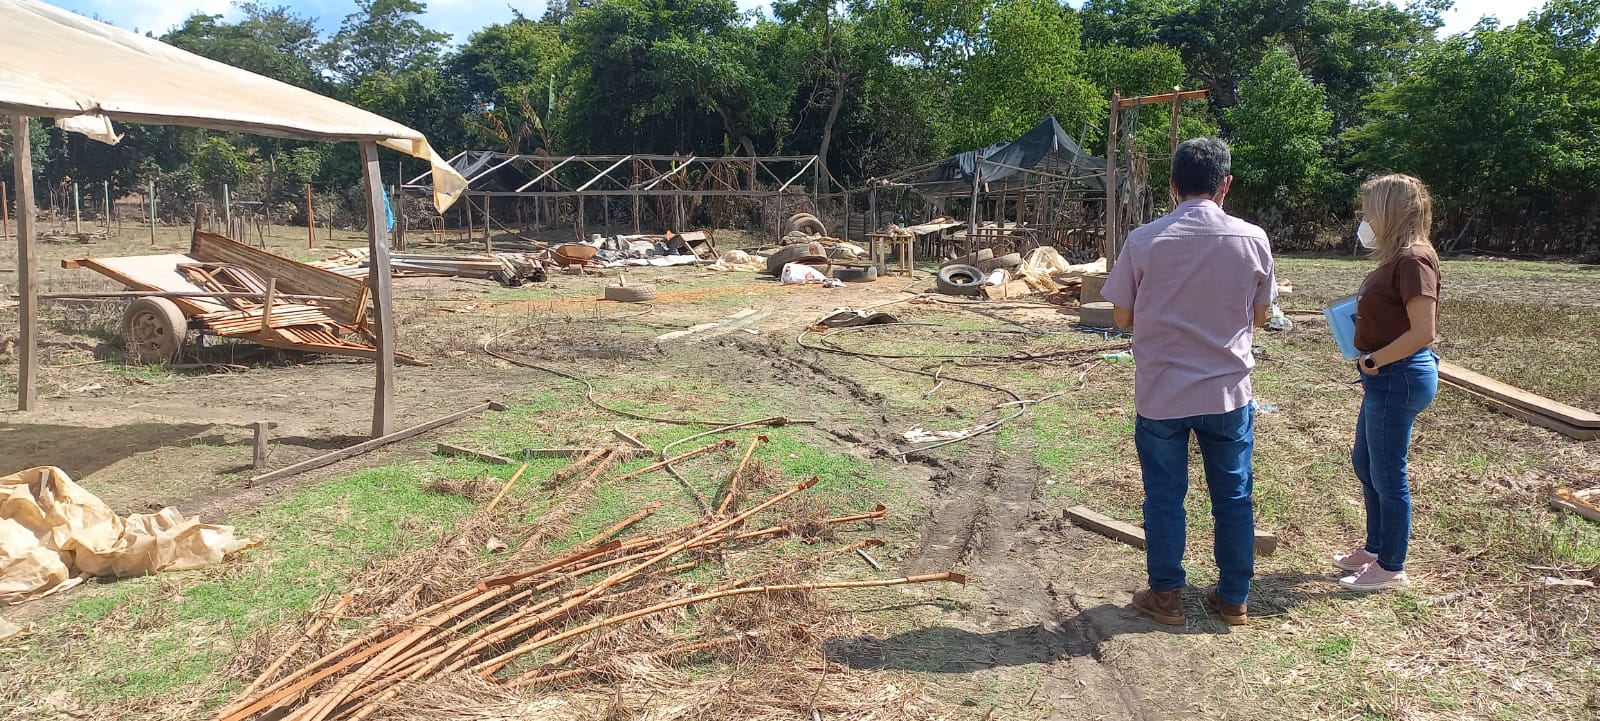 Após perder toda a produção de couve, produtor está morando com familiares na zona rural (Foto: Louise Maria/Divulgação DPETO)